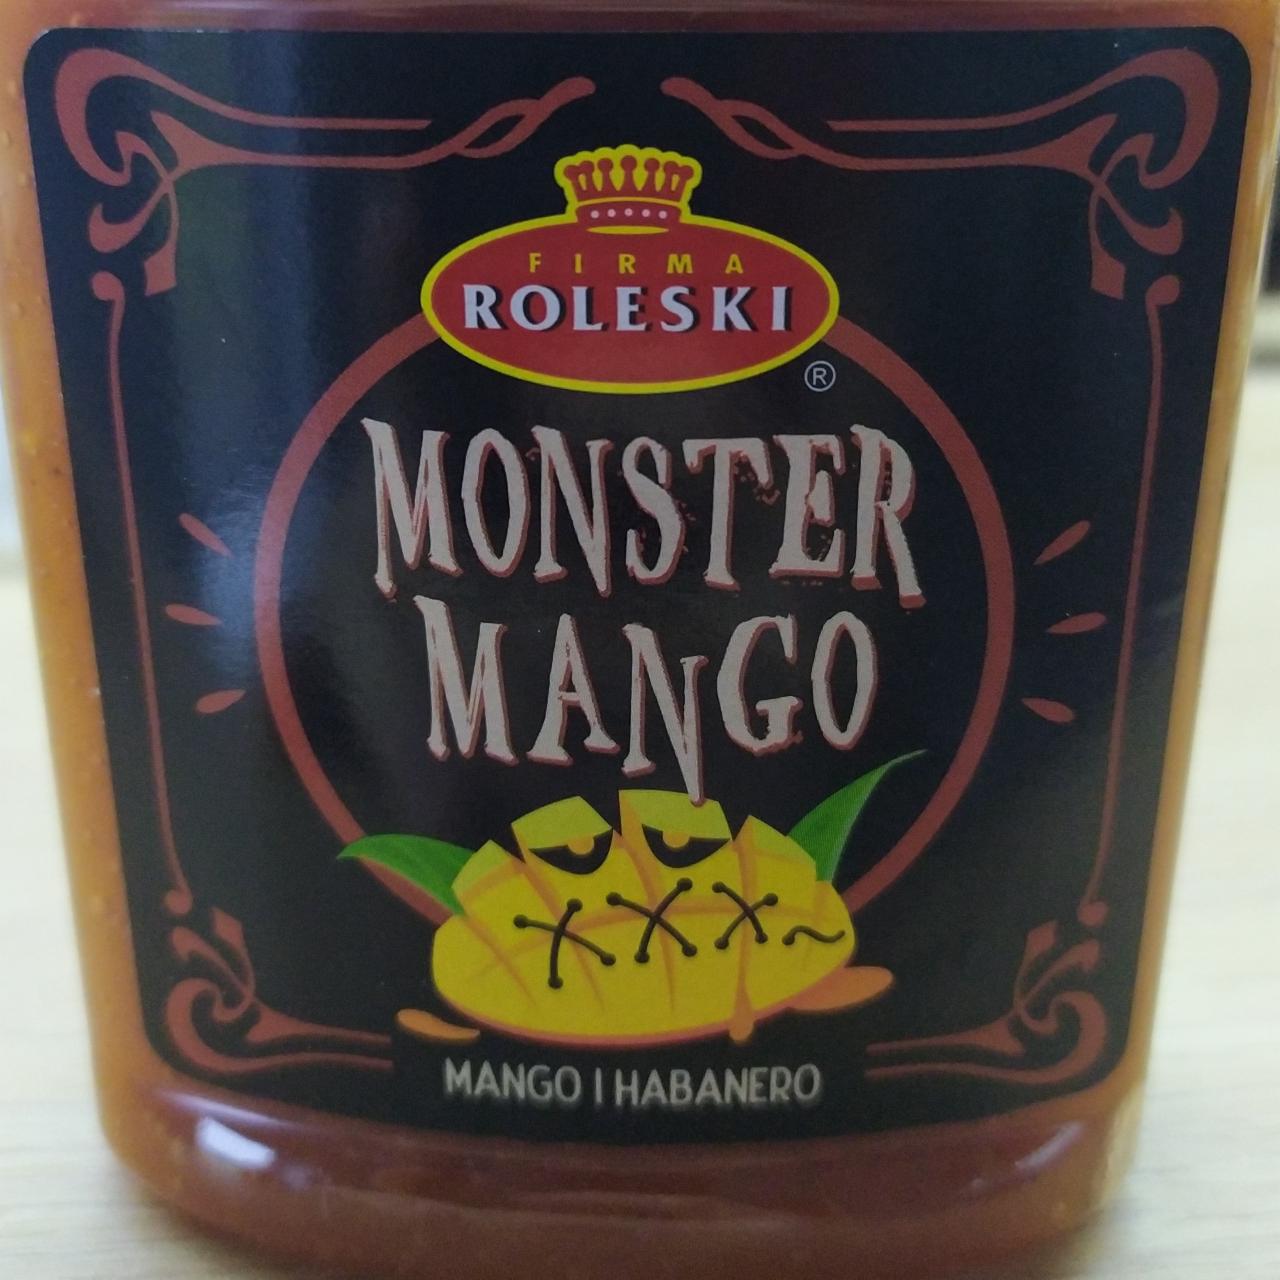 Zdjęcia - Monster mango Firma Roleski